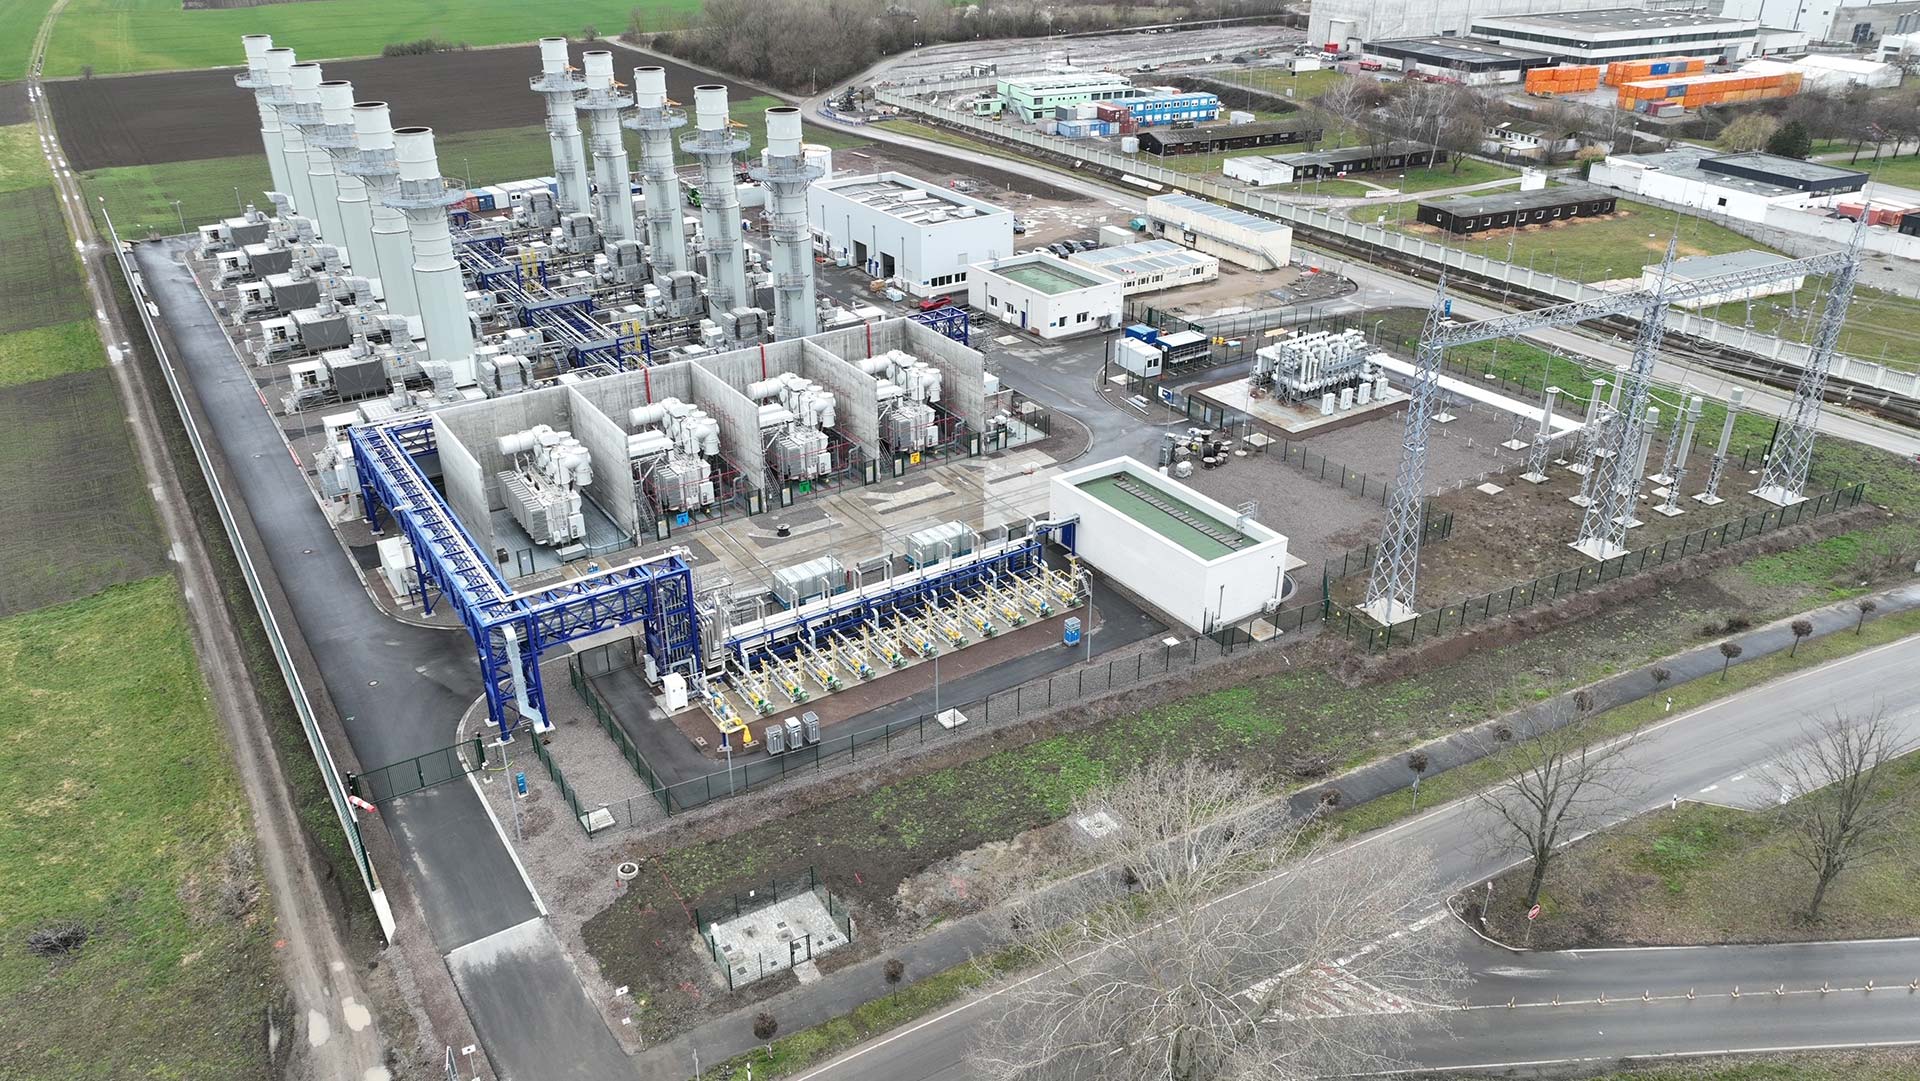 Das 300-MW-Kraftwerk Biblis Grid Stability Power Plant von RWE, das mit Aeroderivative-Technologie von GE betrieben wird, verbessert die Zuverlässigkeit der deutschen Stromversorgung